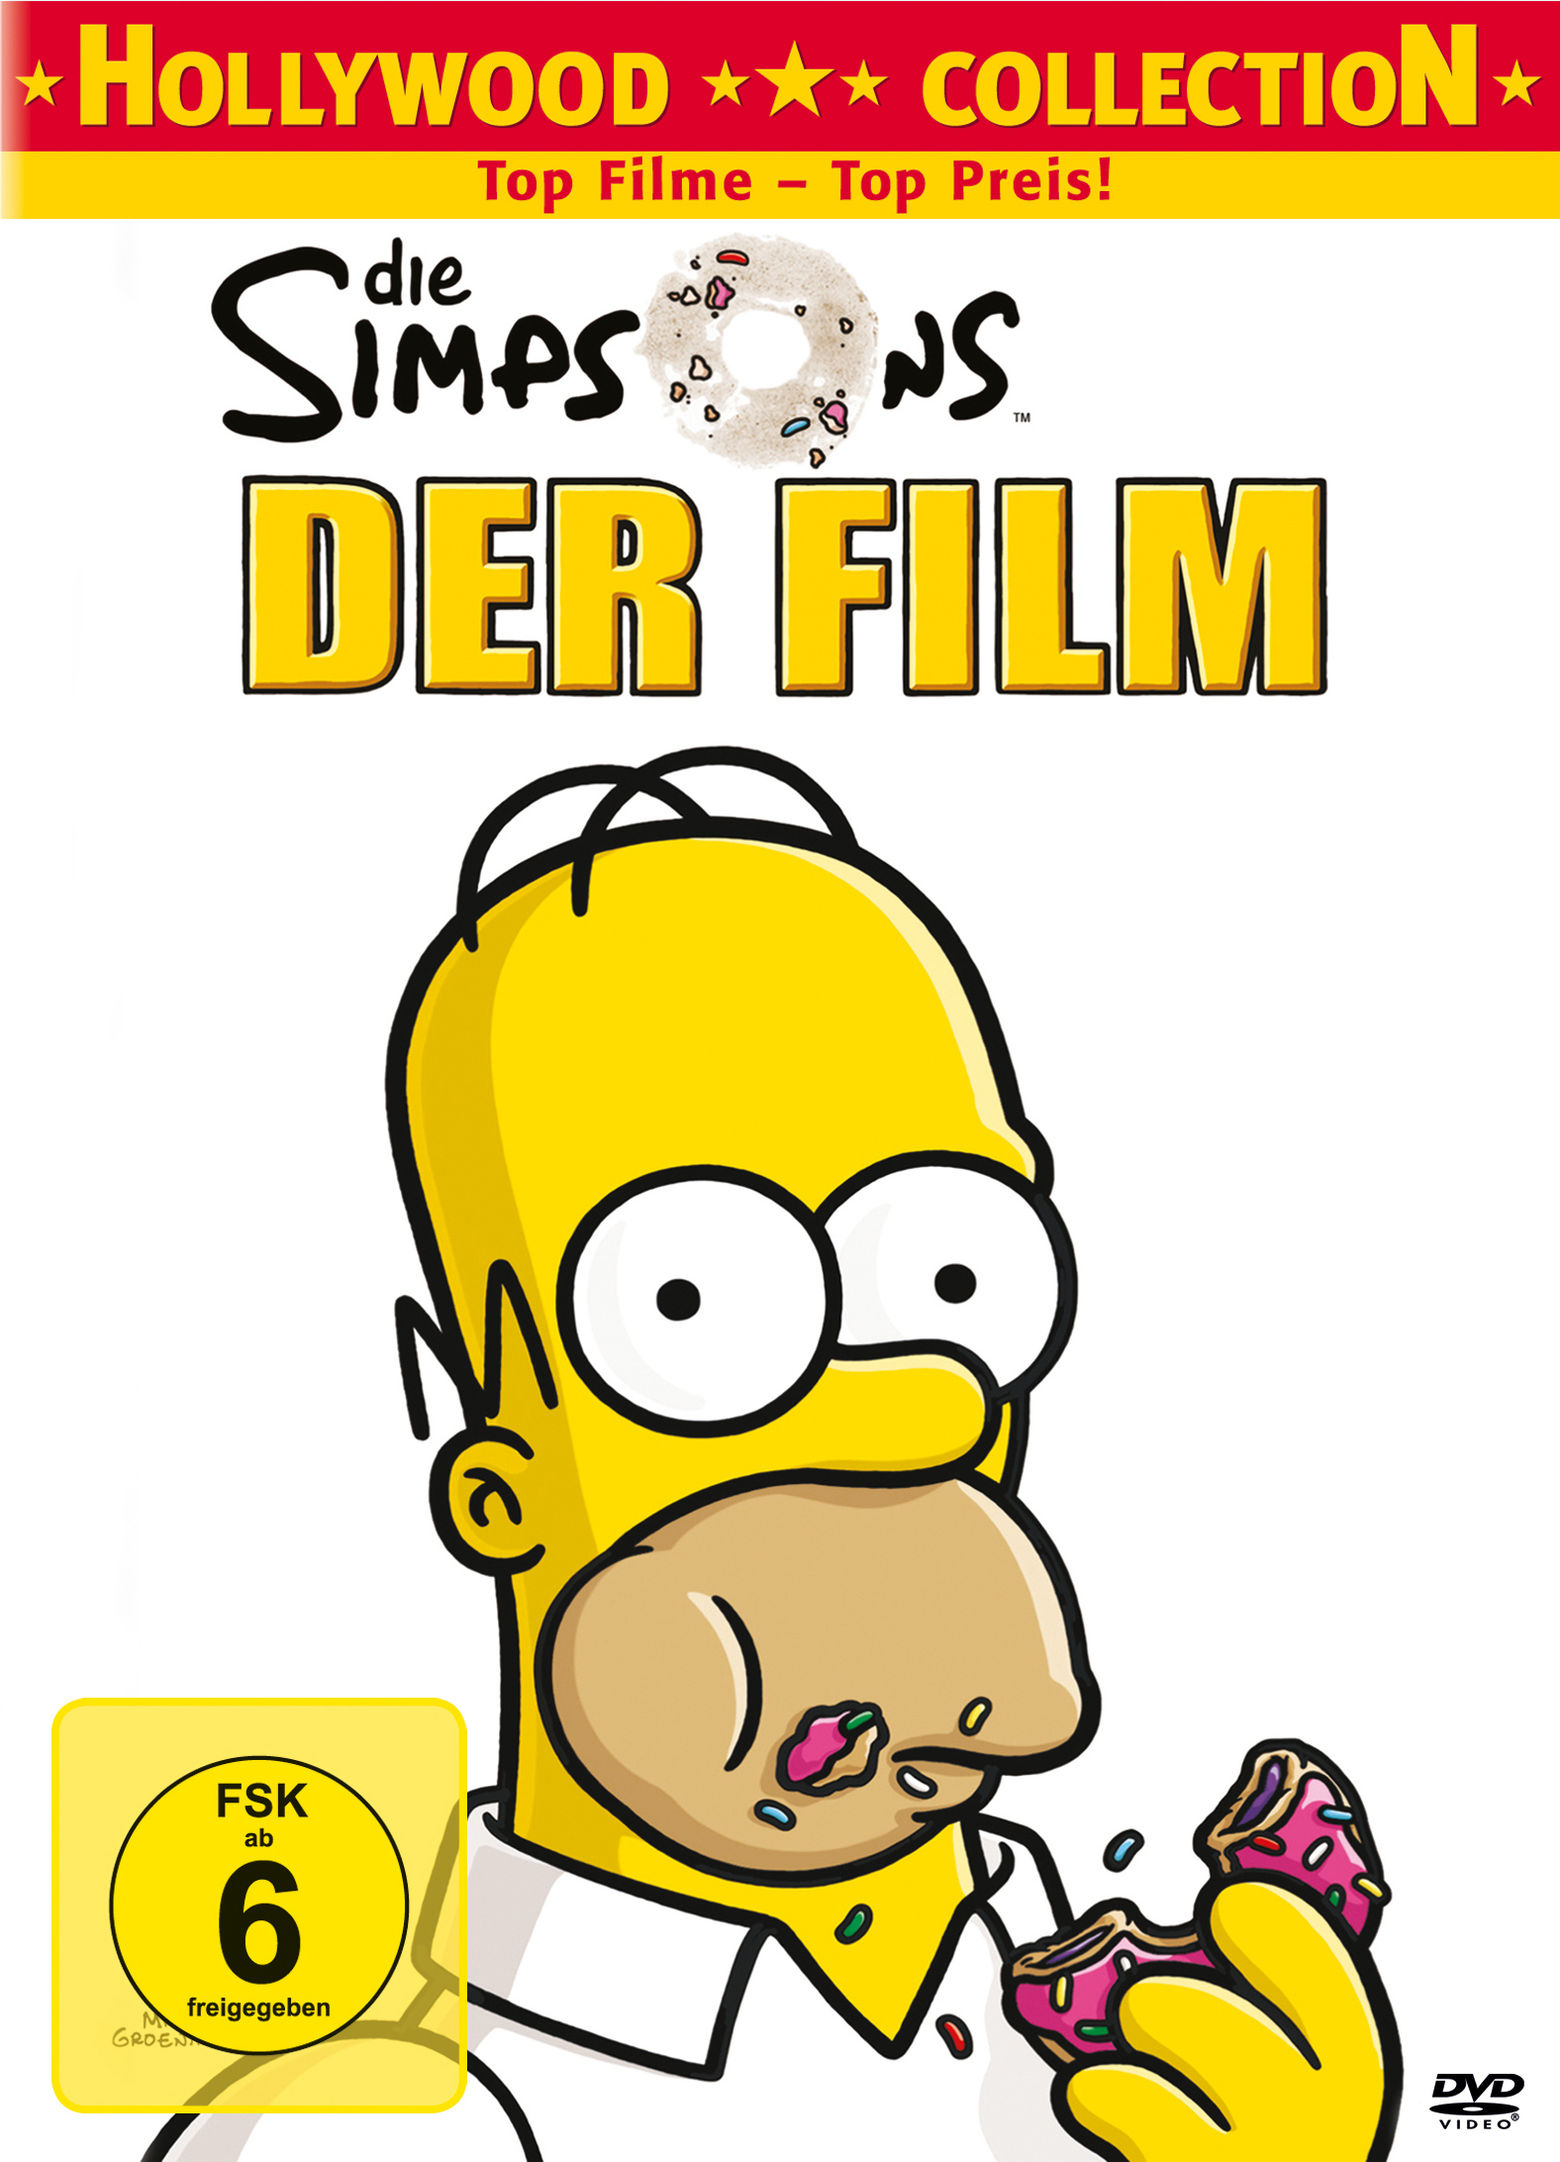 Die Simpsons - Der Film DVD bei Weltbild.de bestellen